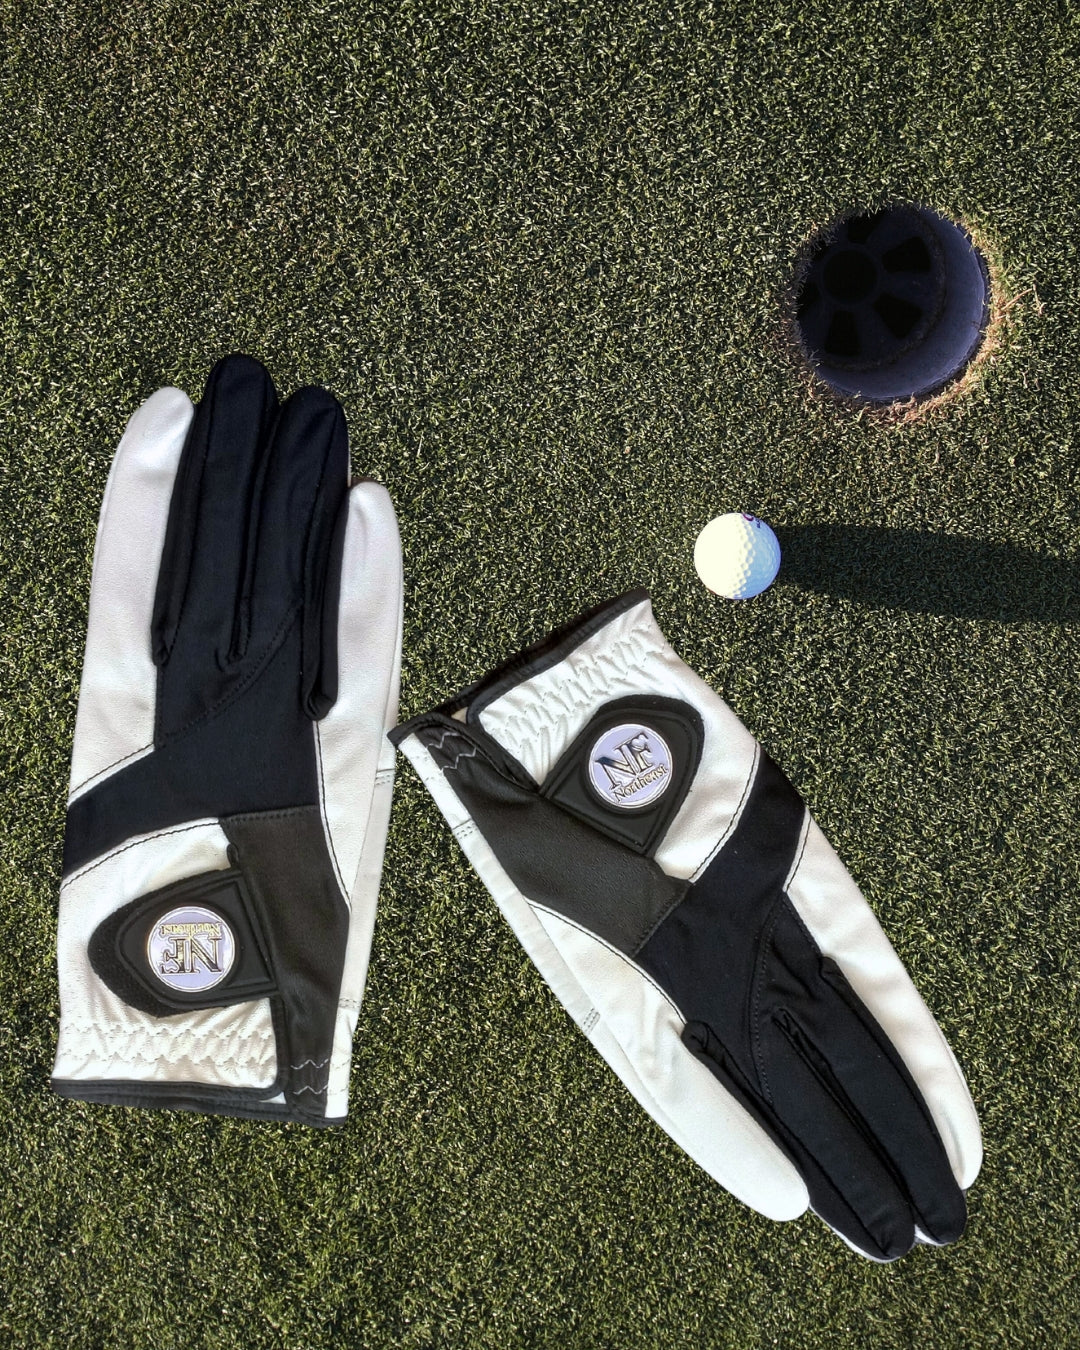 NF Northeast Golf Glove - Men's Left